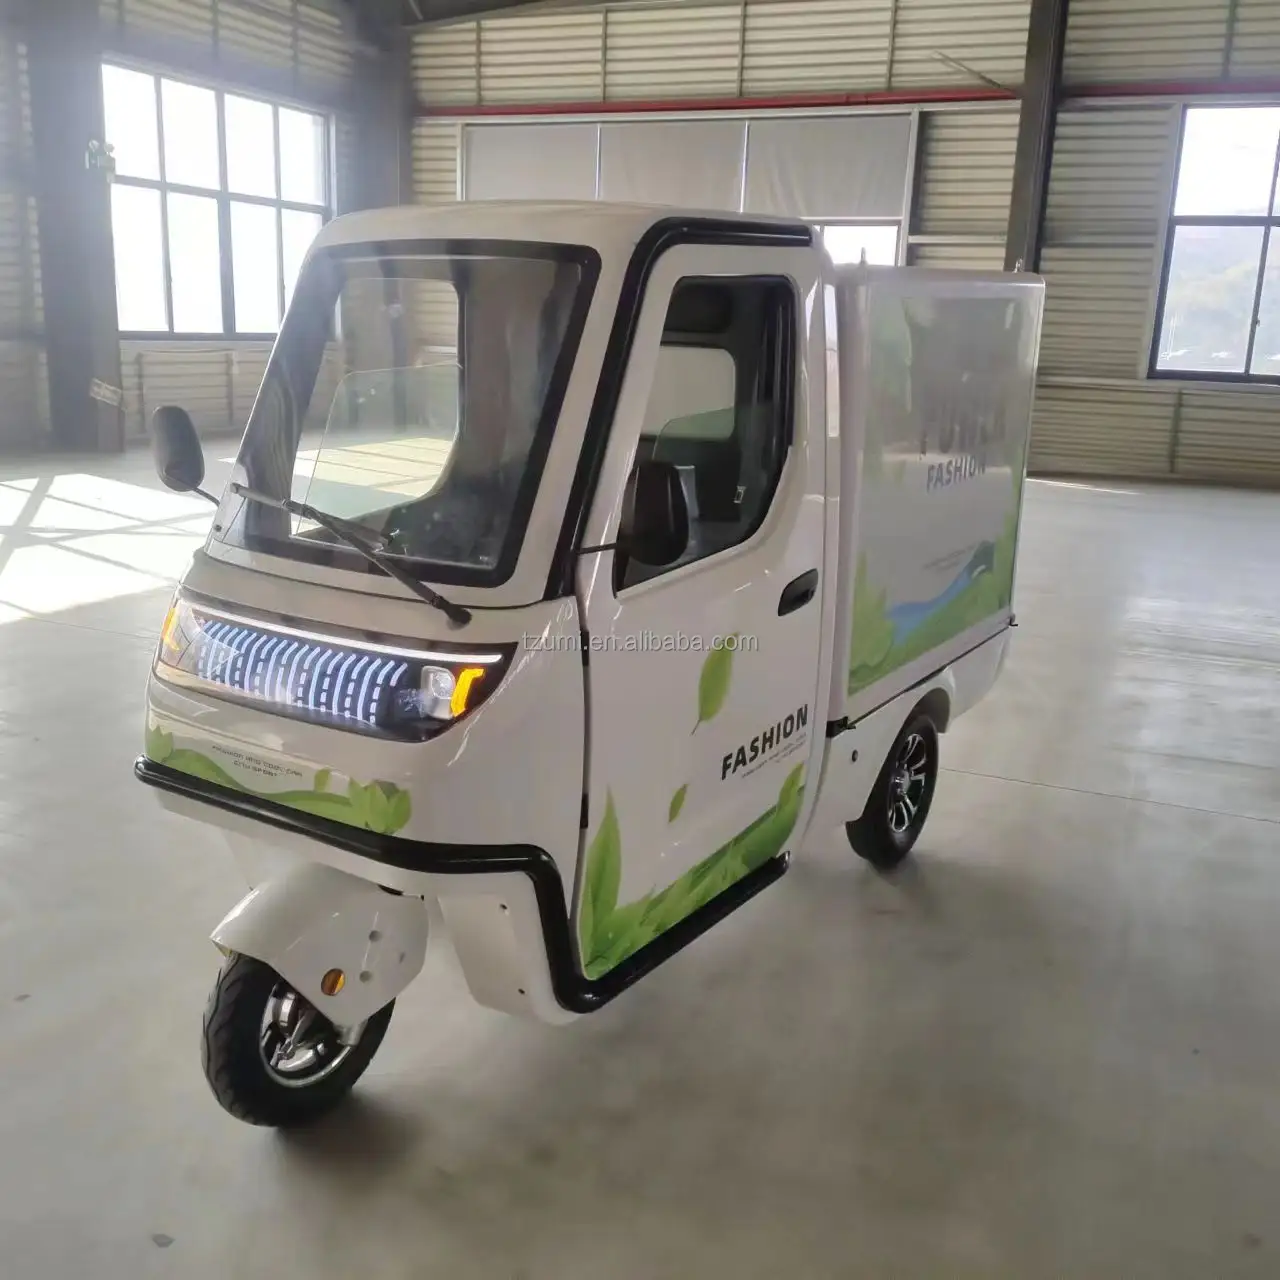 Fábrica venda quente Personalização triciclo elétrico com cabine para carga com 2 portas para adulto